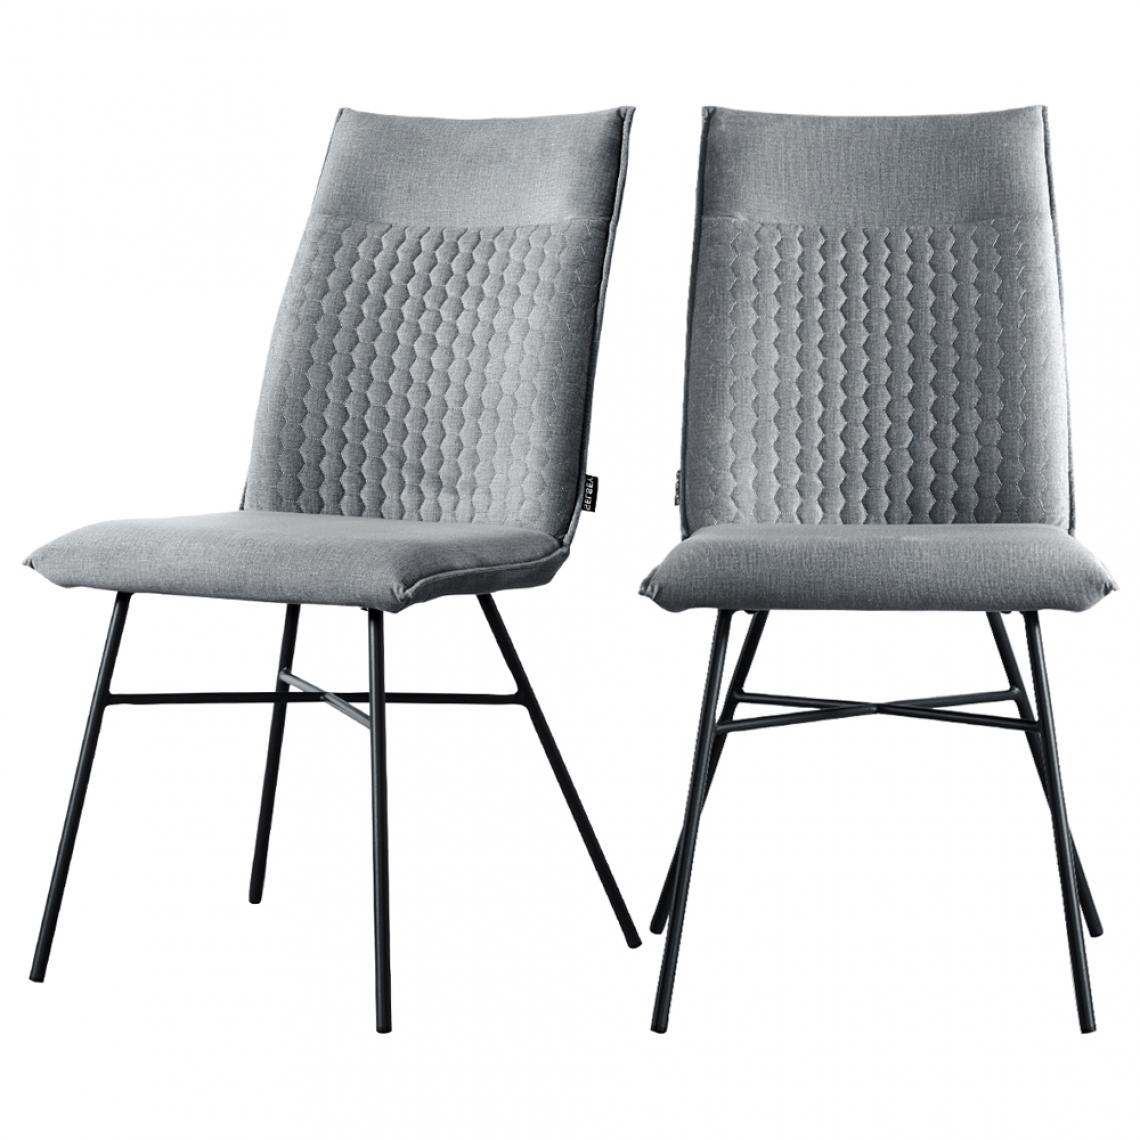 Selsey - Lot de 2 chaises - CARLYN - matelassées - gris - pieds en métal - Chaises